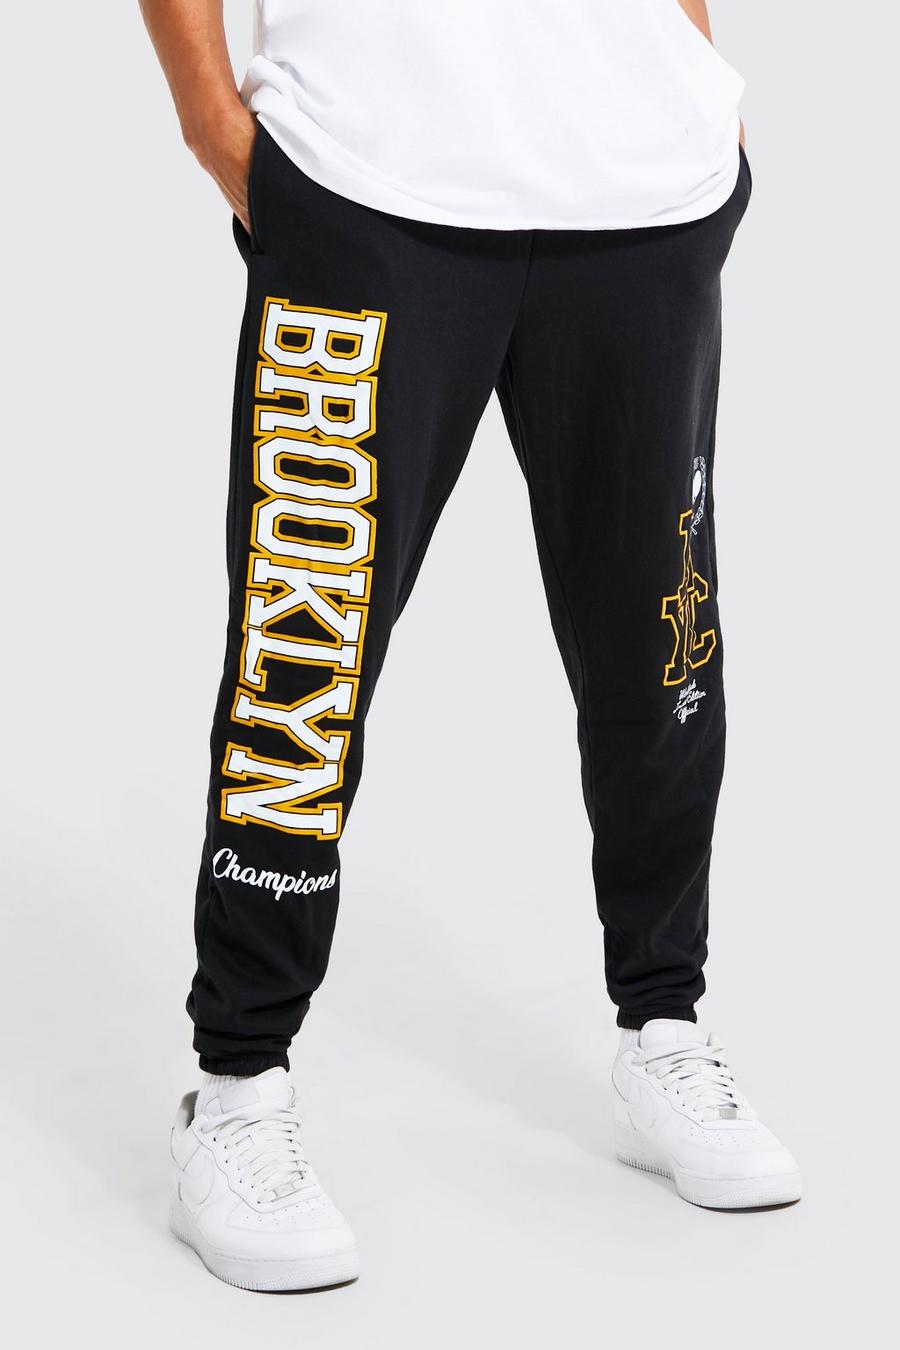 Pantaloni tuta Tall Brooklyn stile Varsity Limited Edition, Black negro image number 1